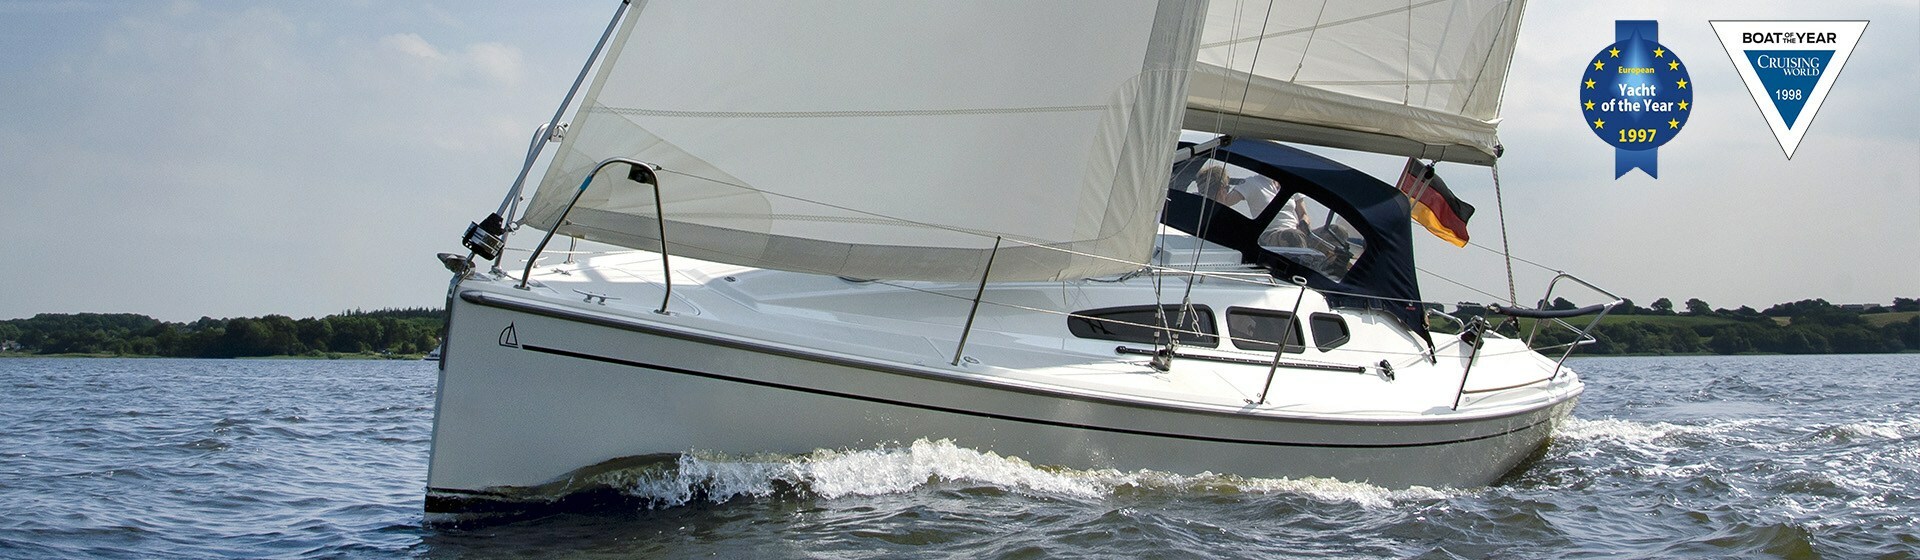 Dehler sailing yacht